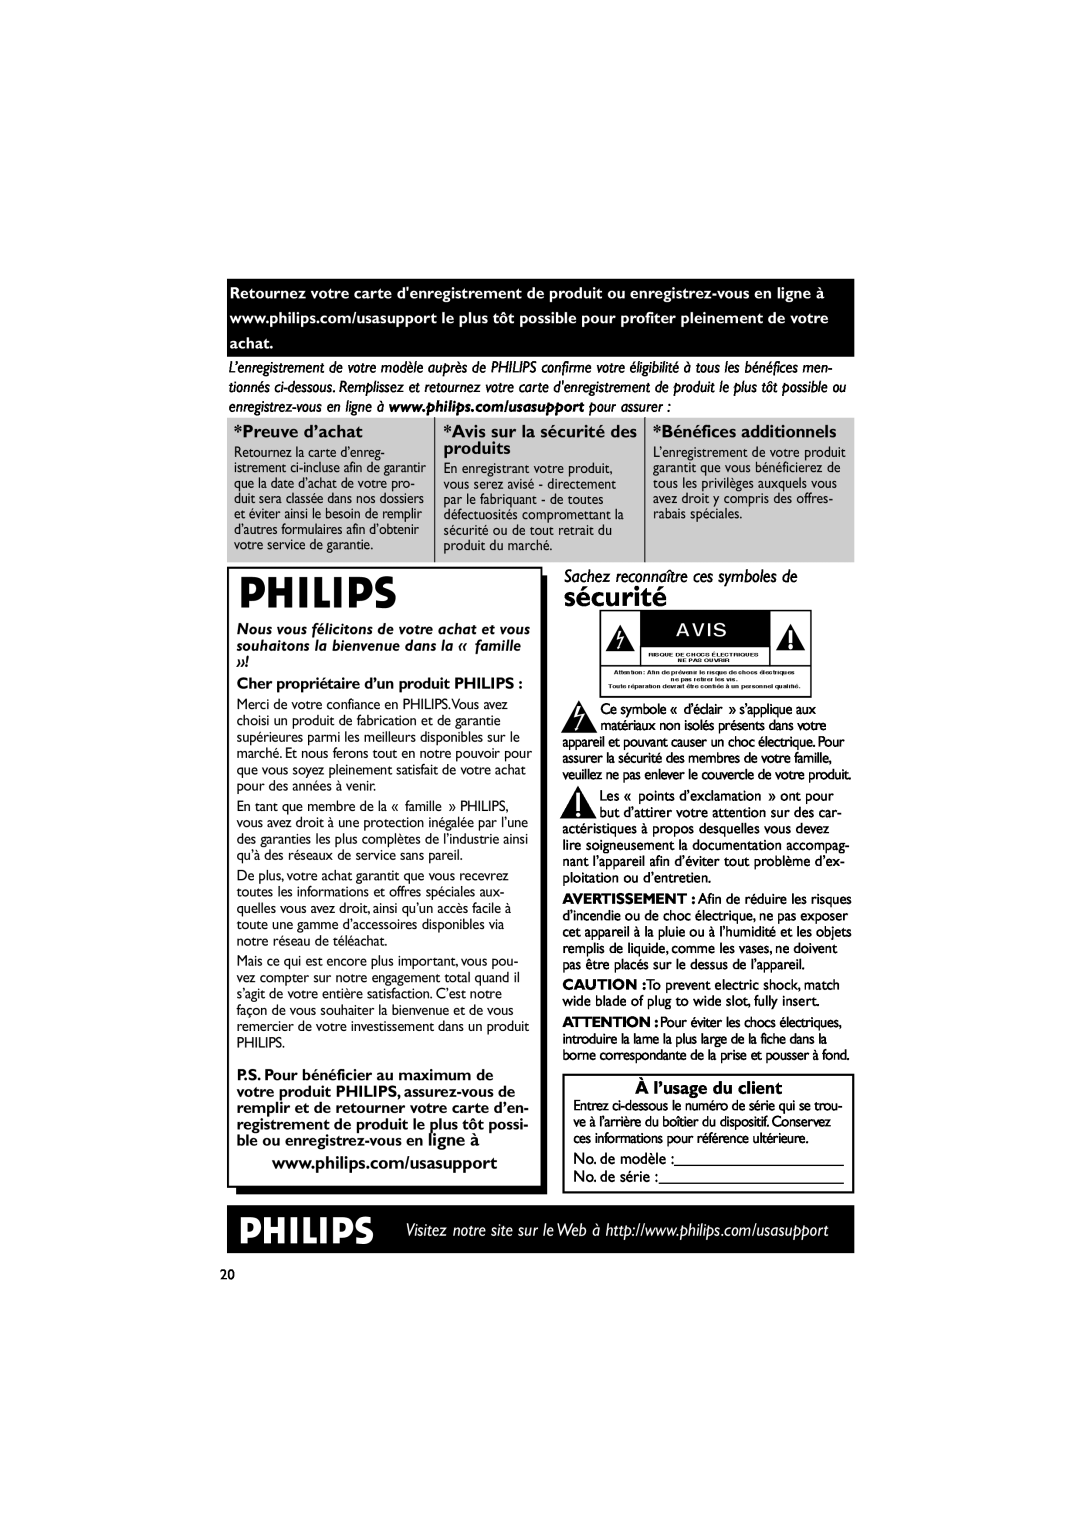 Philips MC235B/37 Preuve d’achat, produits, À l’usage du client, Avis sur la sécurité des, Bénéfices additionnels 